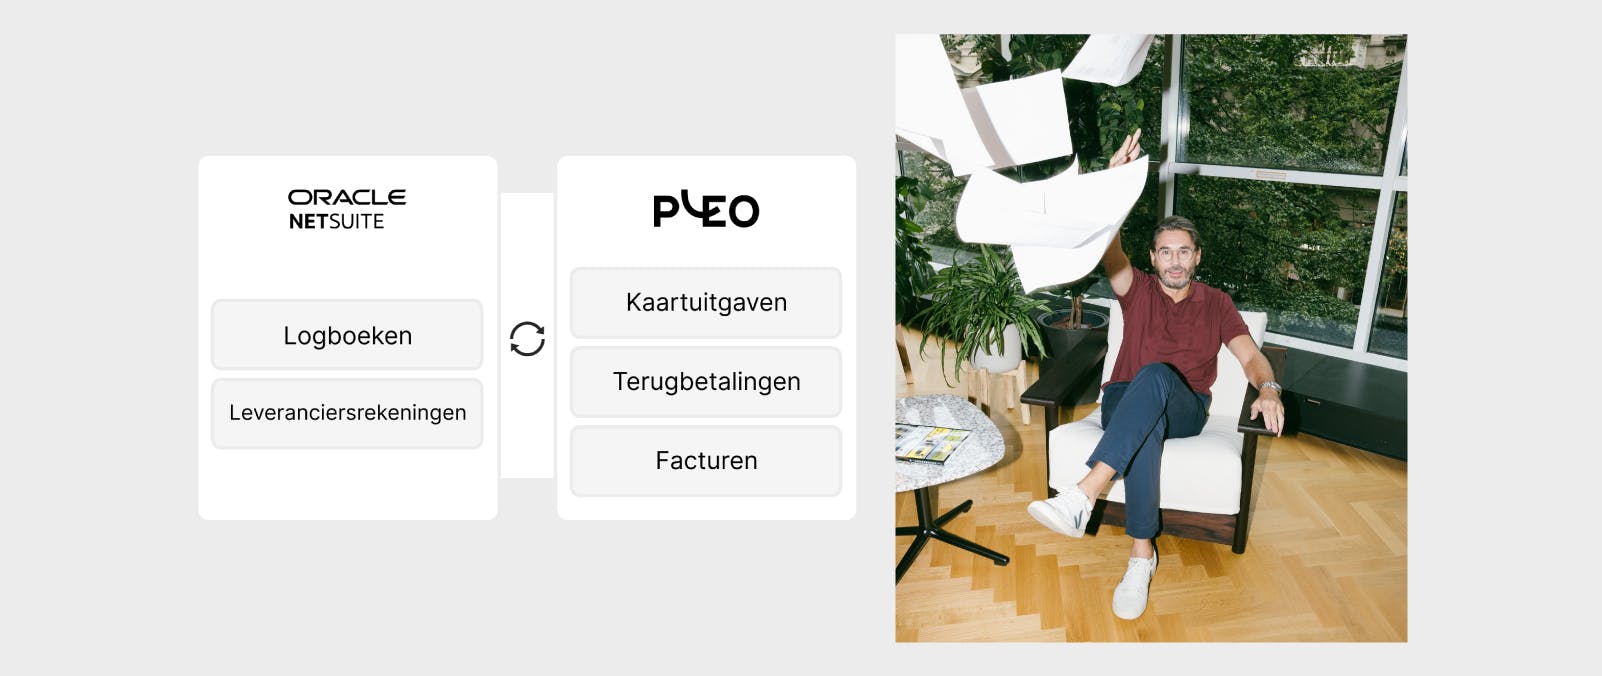 NetSuite + Pleo